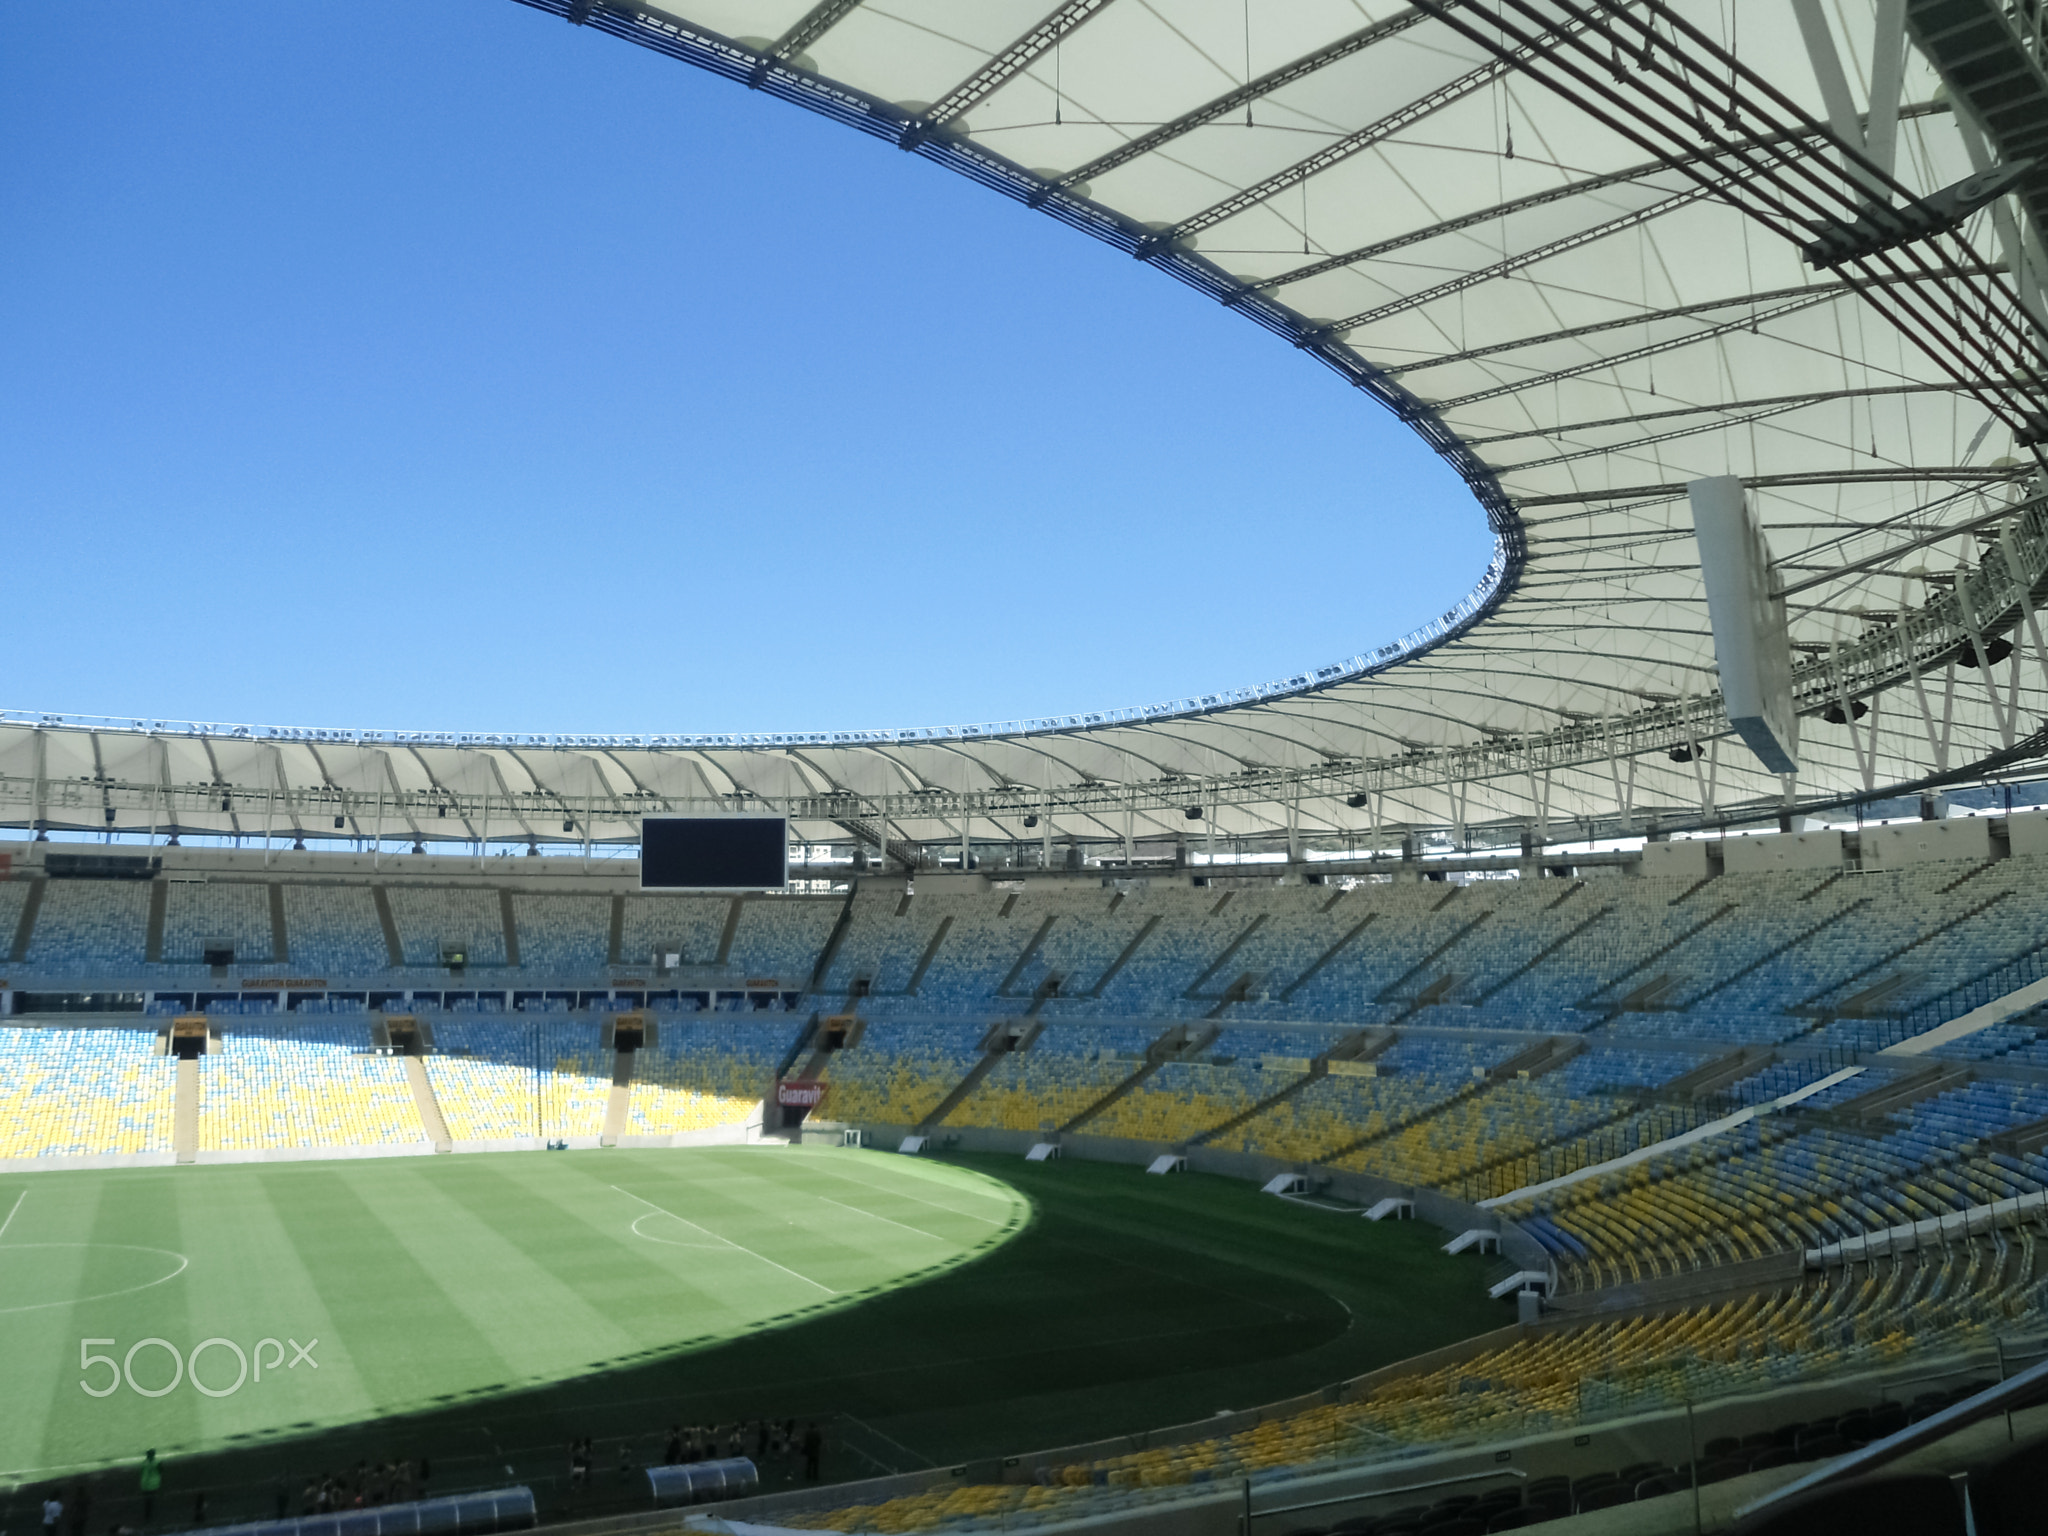 Maracana Stadium located in Rio de Janeiro